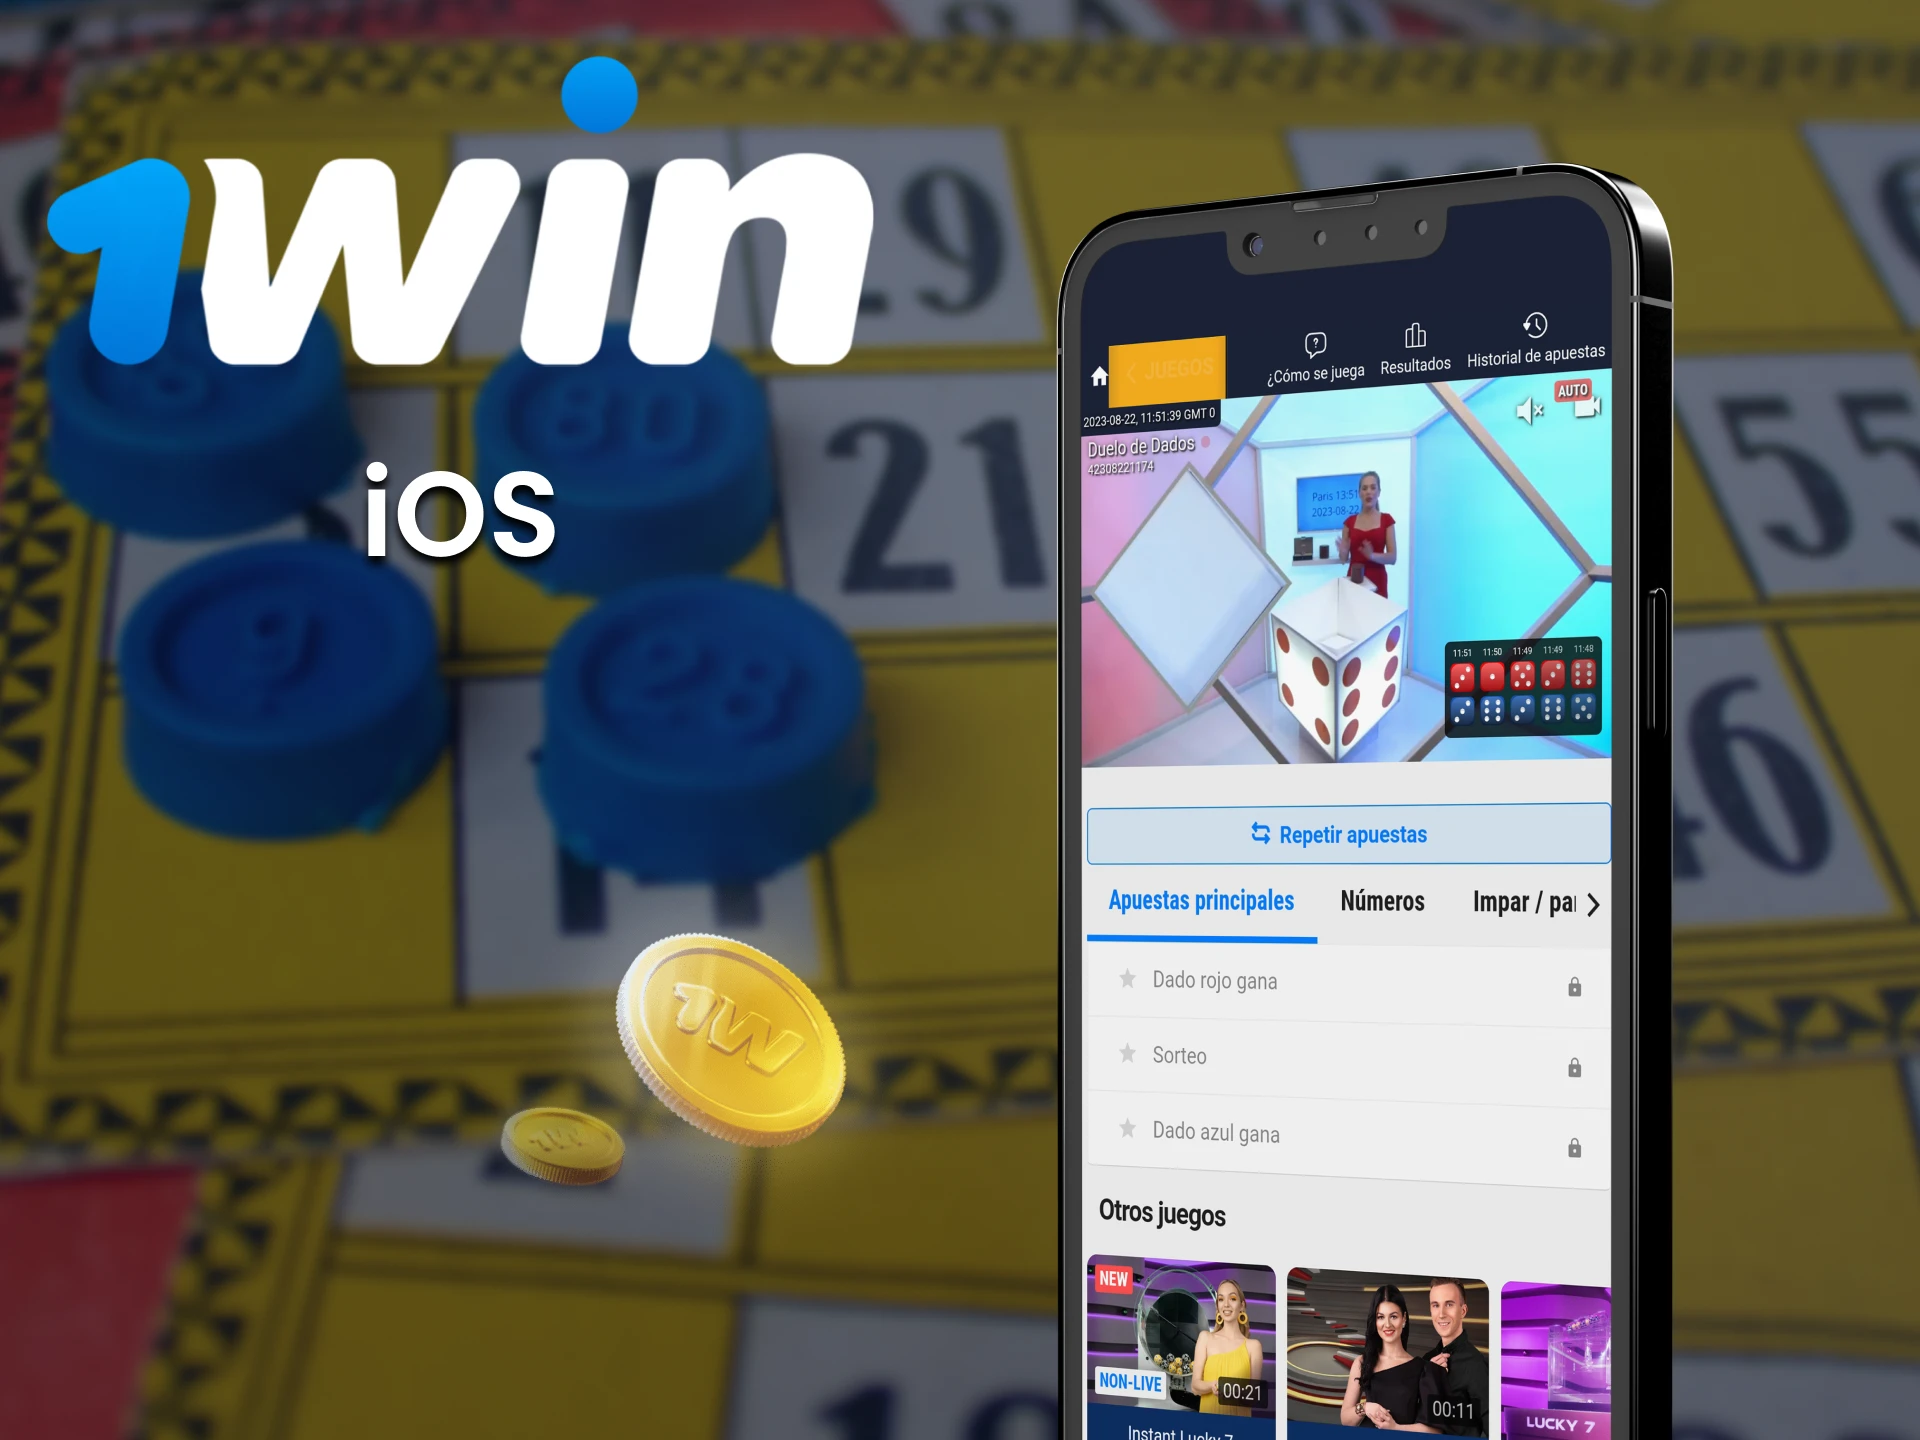 Apueste en el deporte Twain a través de la aplicación 1win para iOS.